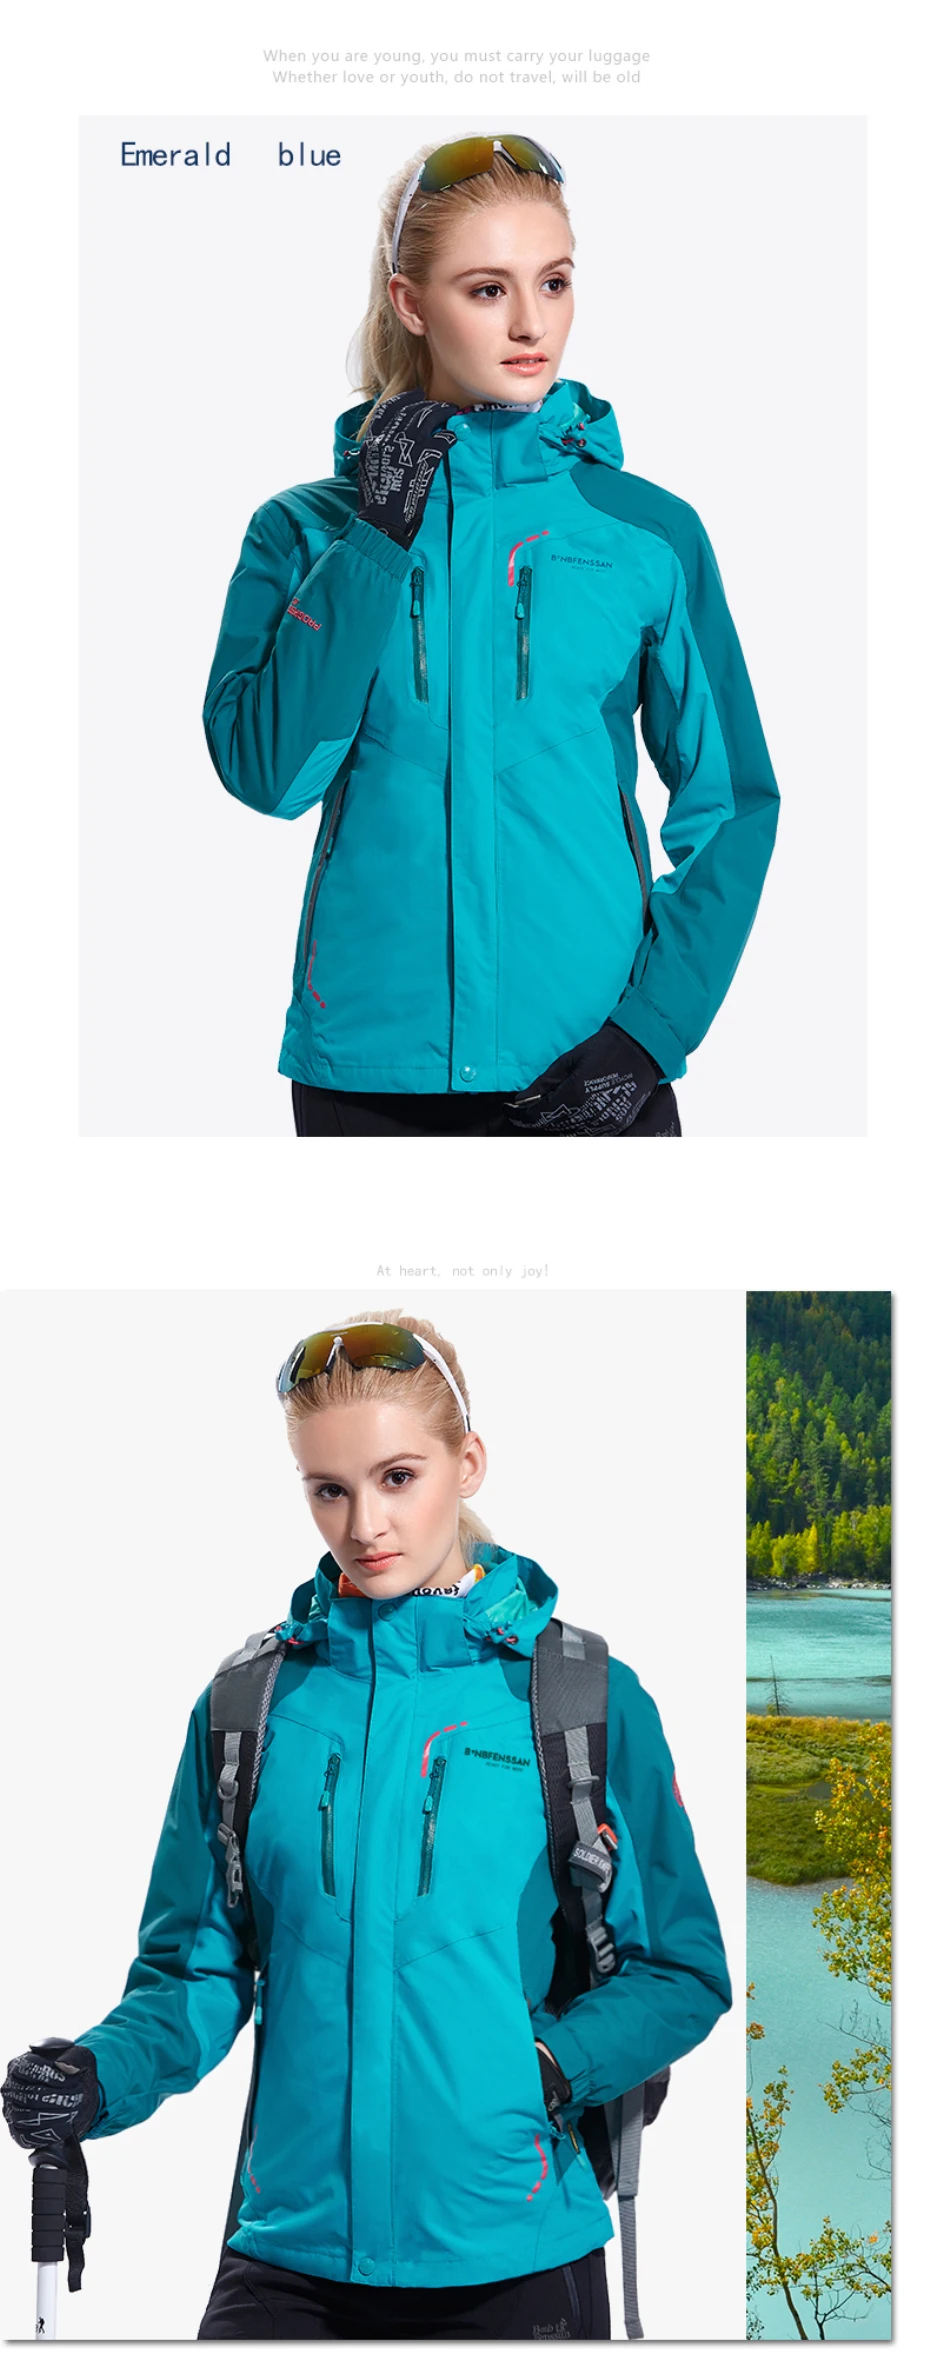 Женские зимние куртки 3 в 1 из флиса, водонепроницаемые, ветрозащитные, теплые, для спорта на открытом воздухе, треккинга, туризма, альпинизма, 8883B